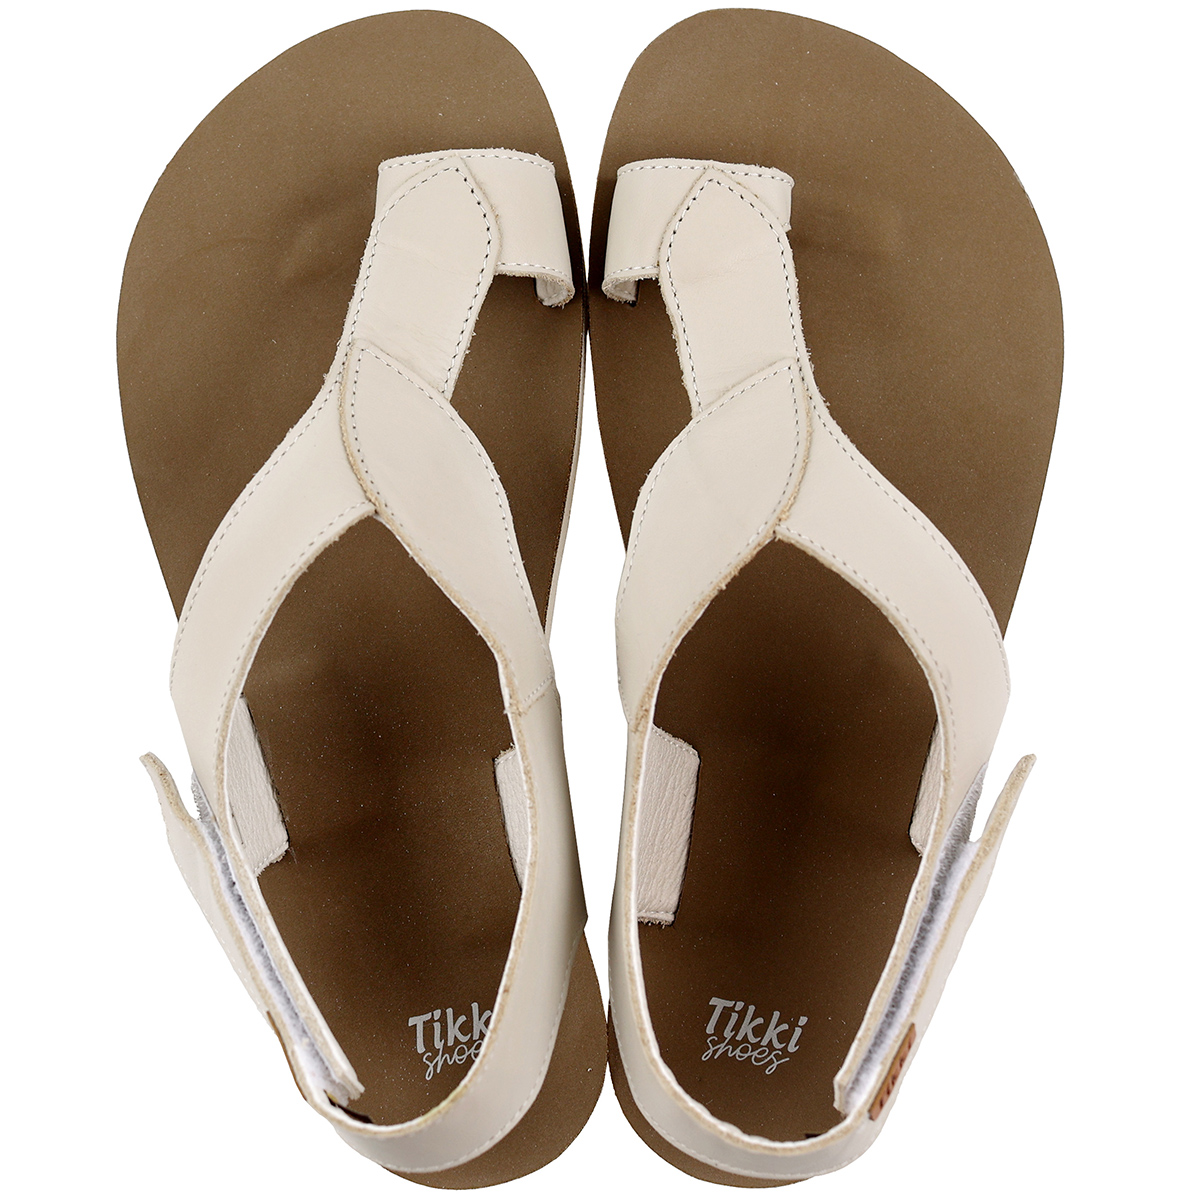 Tikki Soul nahast sandaalid, Cocoa Sisejalats/suvi - HellyK - Kvaliteetsed lasteriided, villariided, barefoot jalatsid